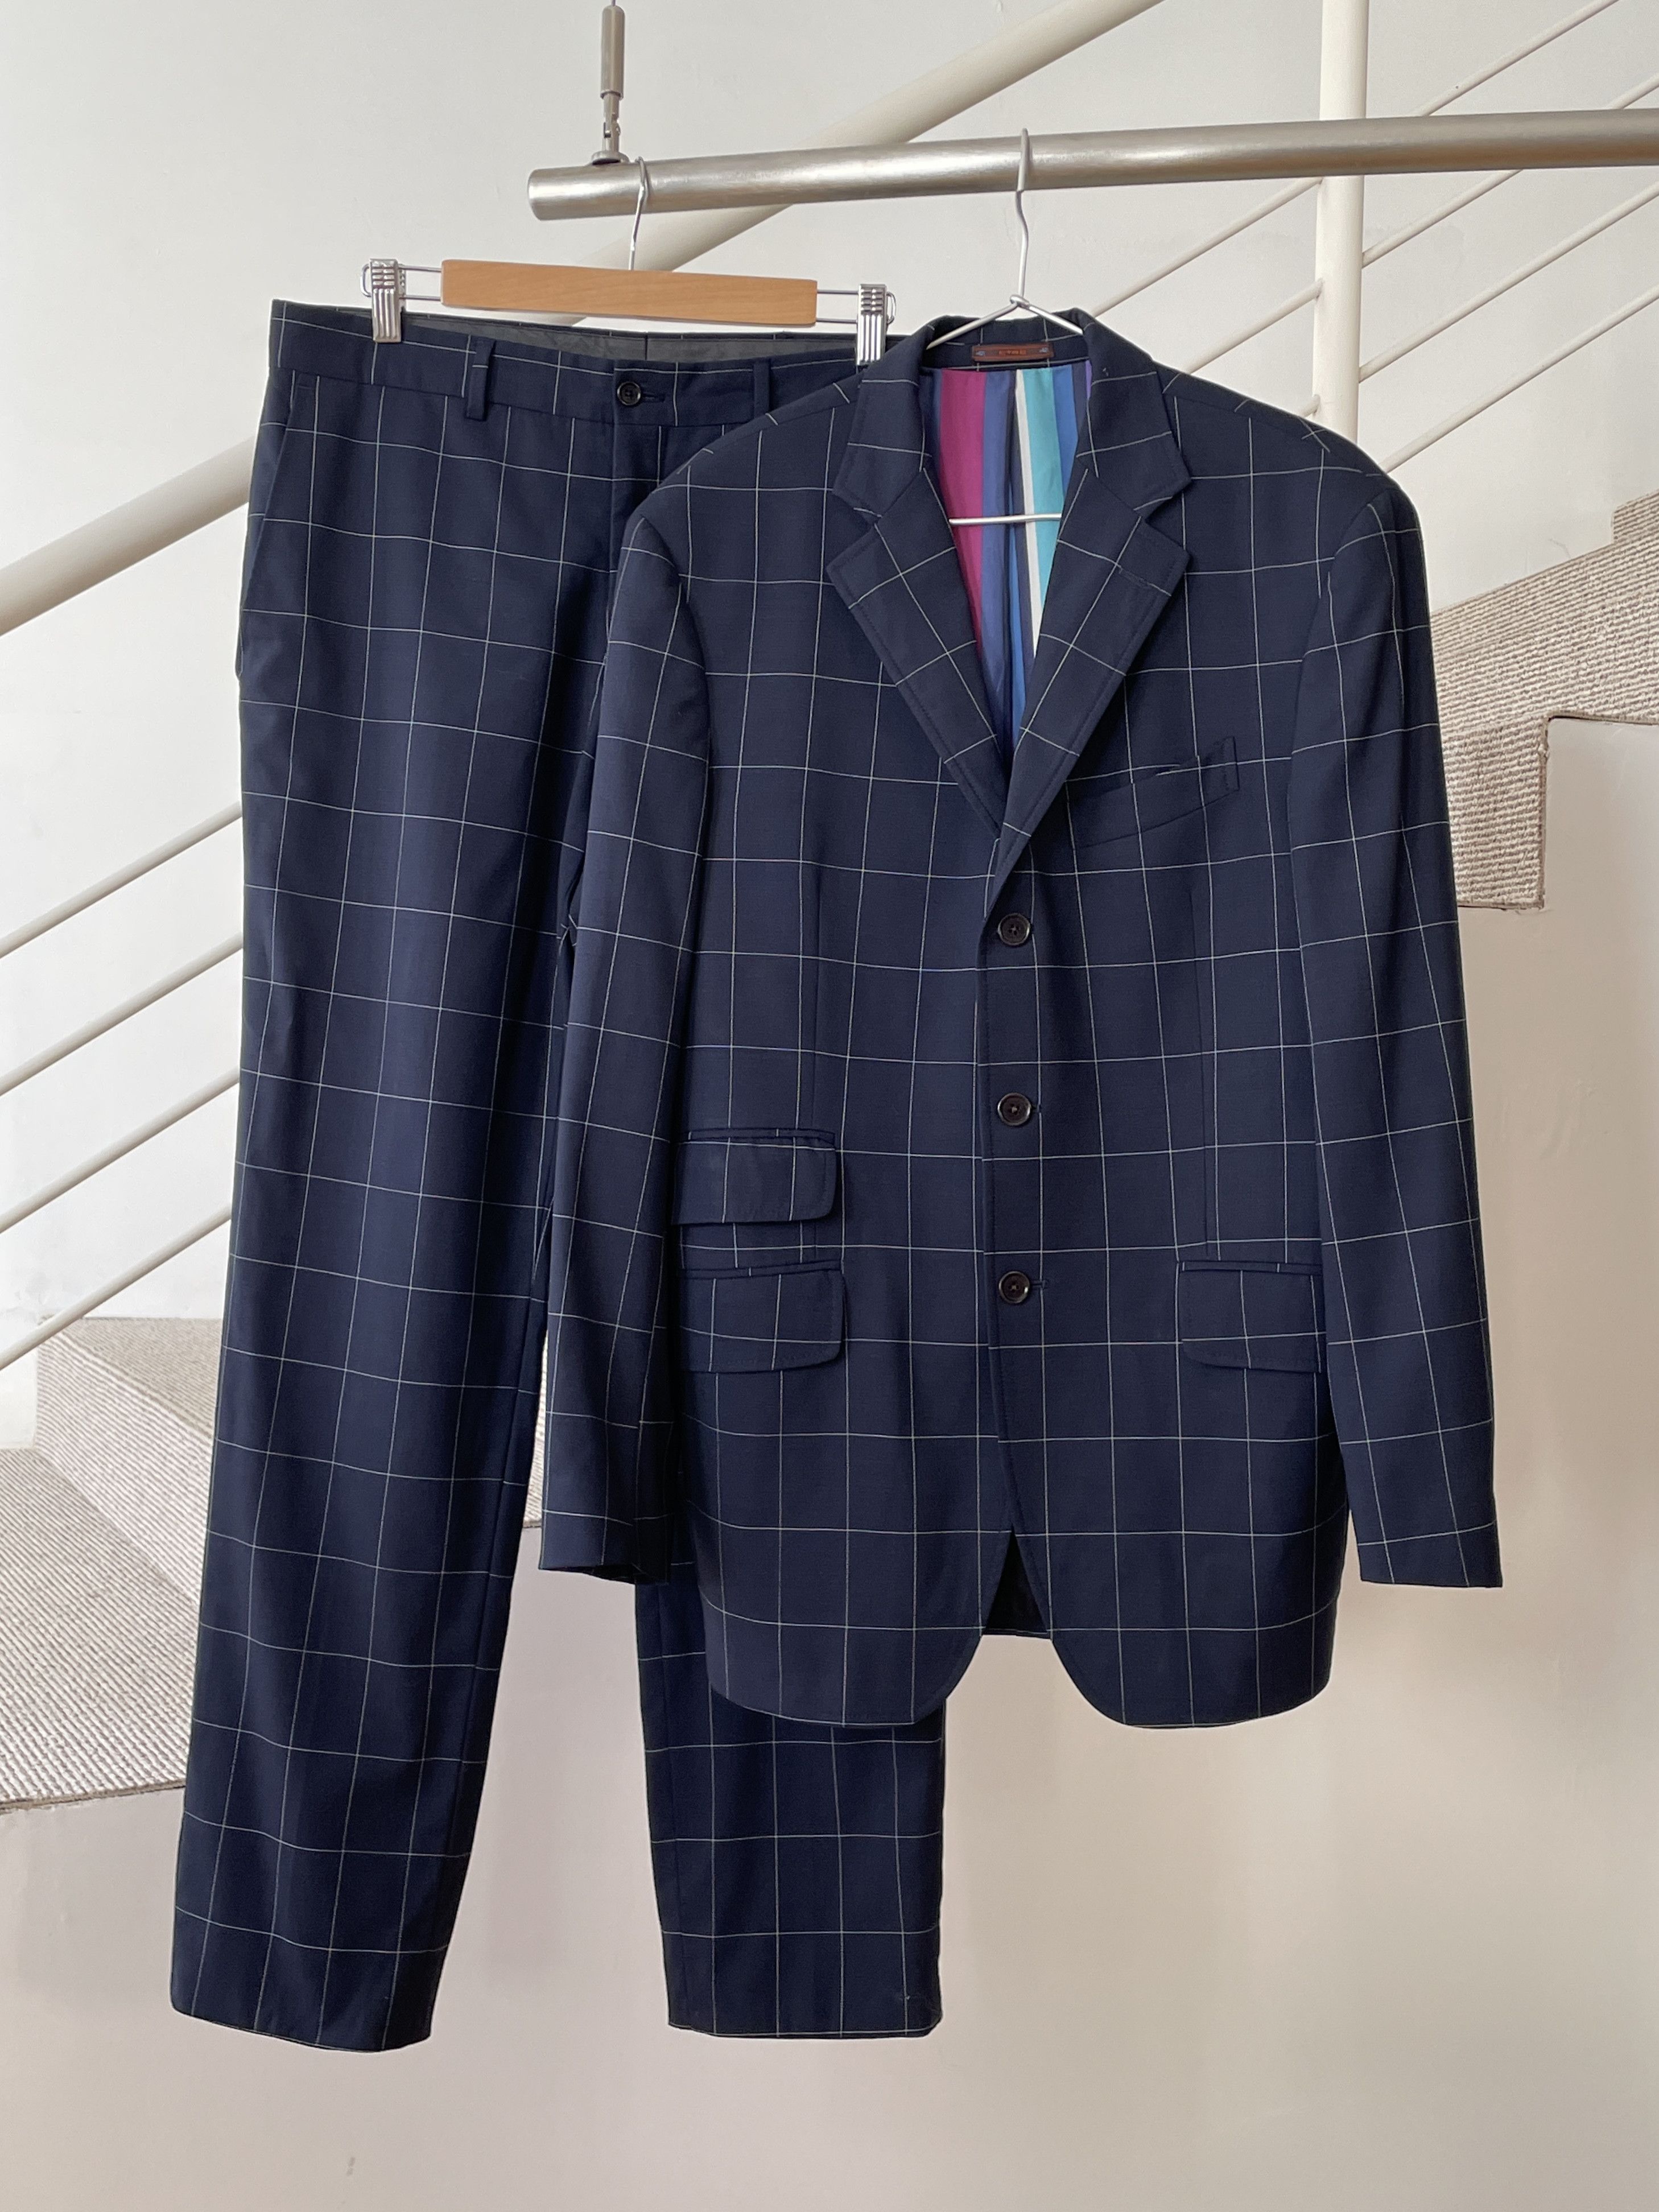 Etro ETRO Jacket Coat Blazer Trousers Suit Plaid Wool A7923 Size 40R - 1 Preview